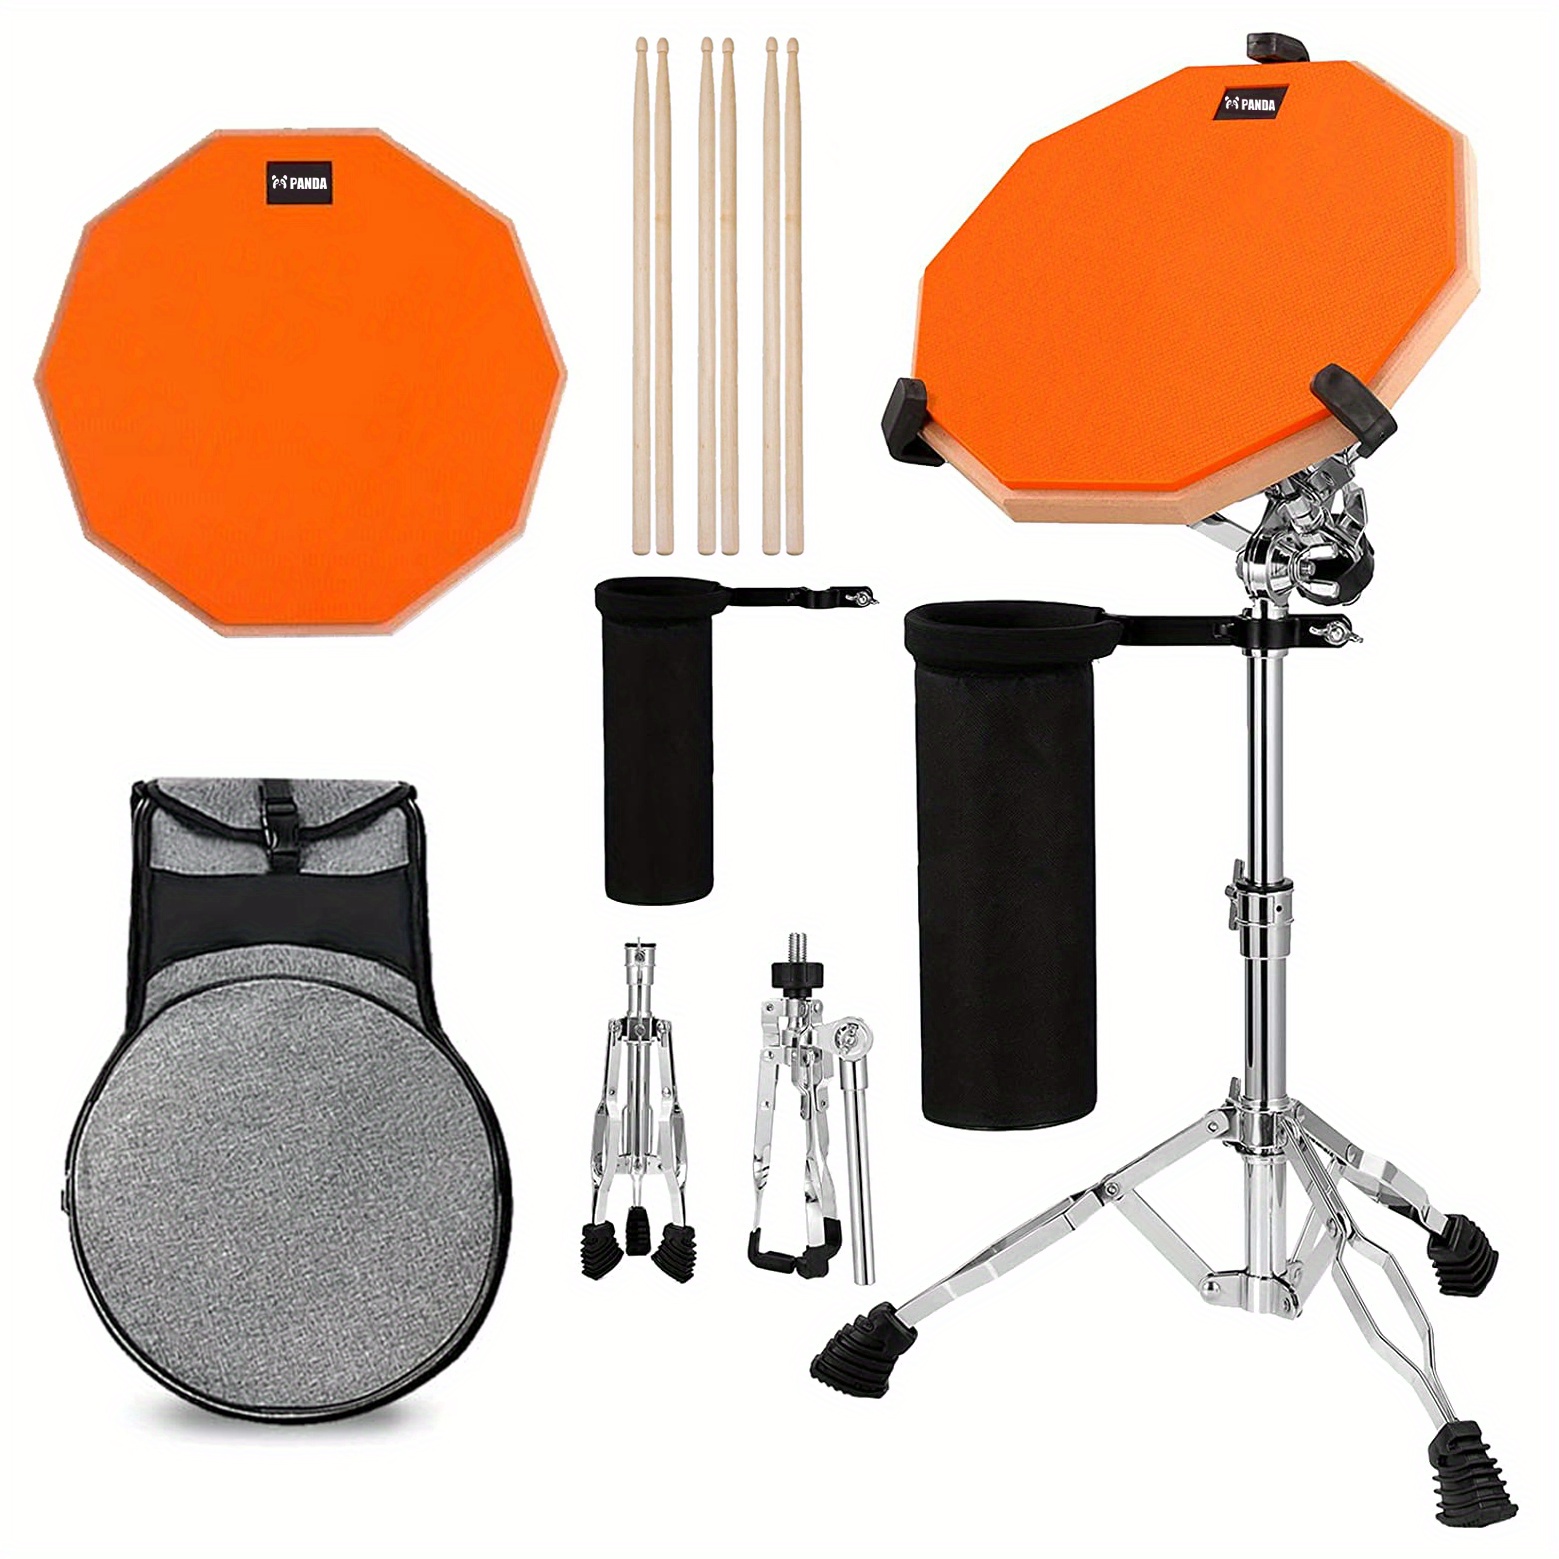 Donner 12 pouces Drum Practice Pad avec baguettes de batterie noir 